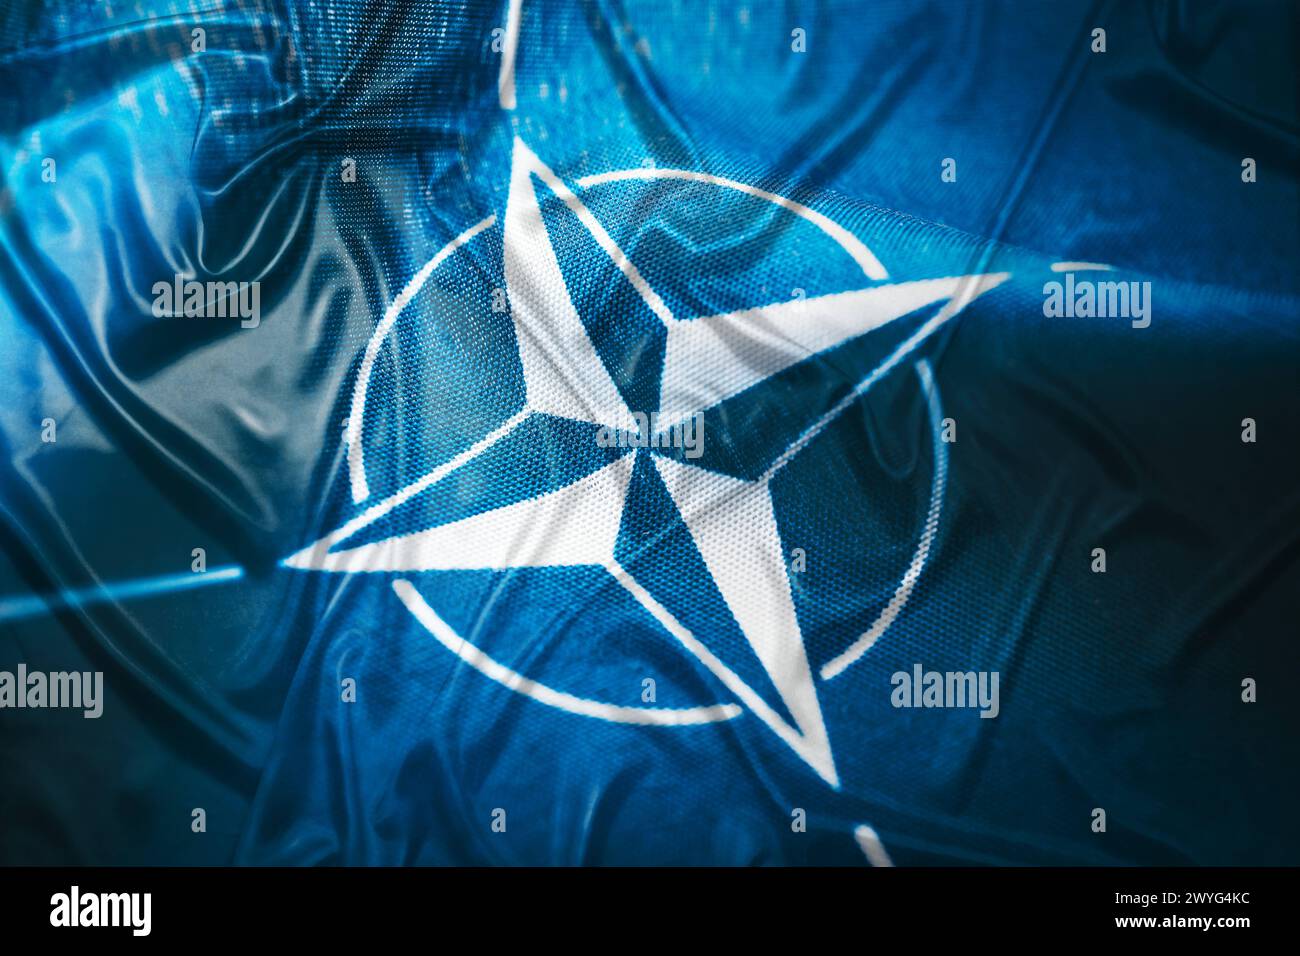 FOTOMONTAGE, NATO-Fahne *** FOTOMONTAGE, NATO flag Stock Photo